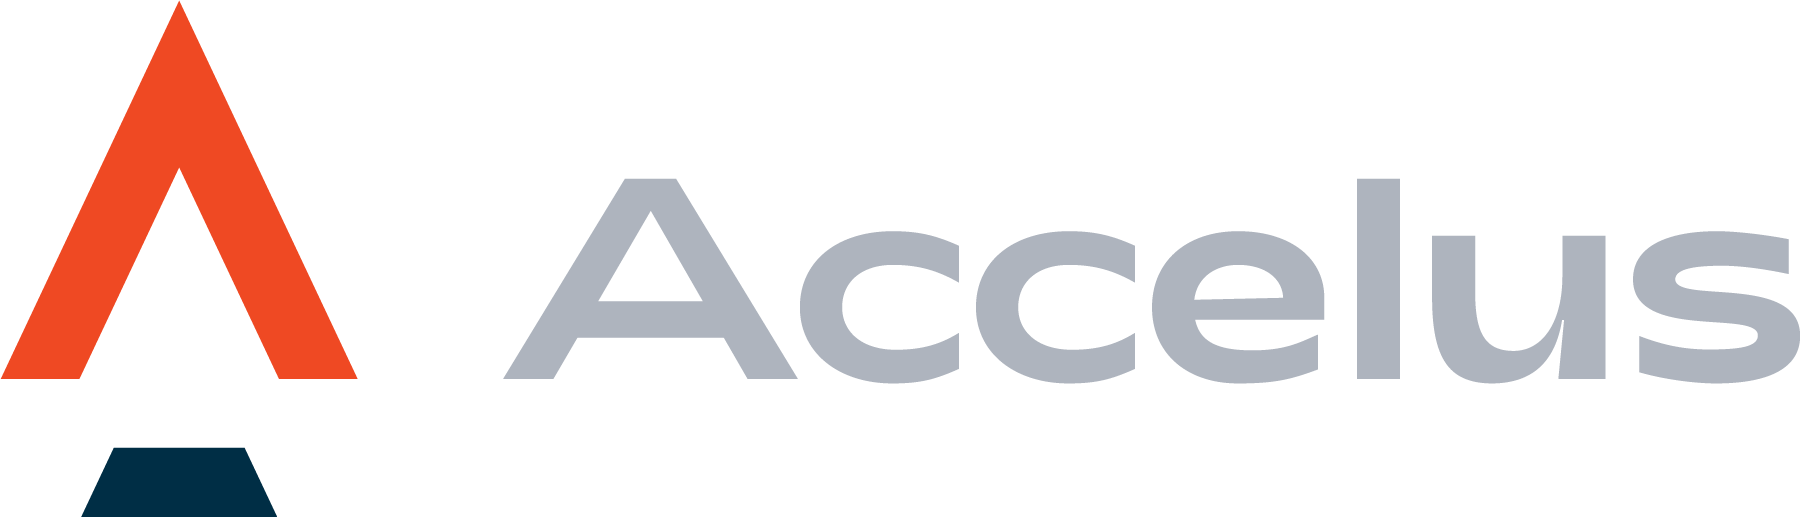 accelus-logo_4c.png